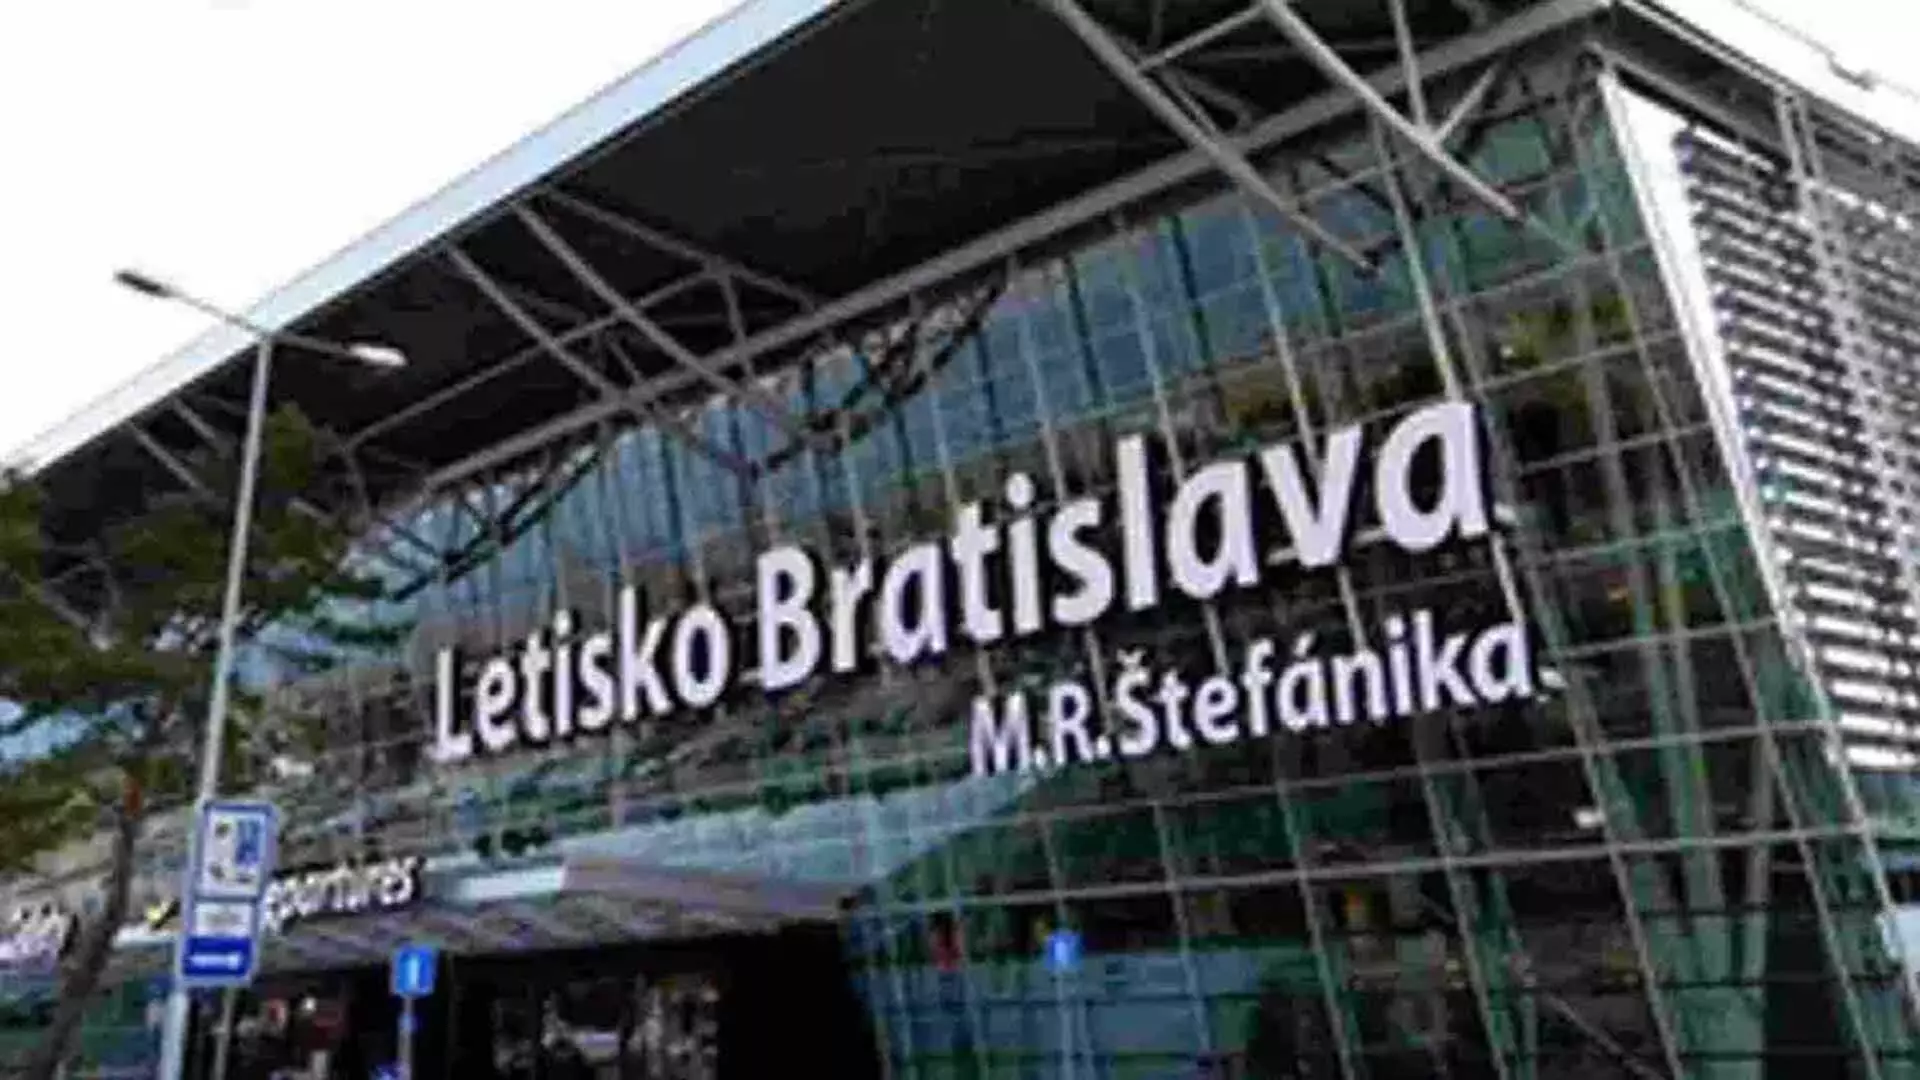 Slovakia के ब्रातिस्लावा हवाई अड्डे पर बम की सूचना के बाद लोगों को निकाला गया